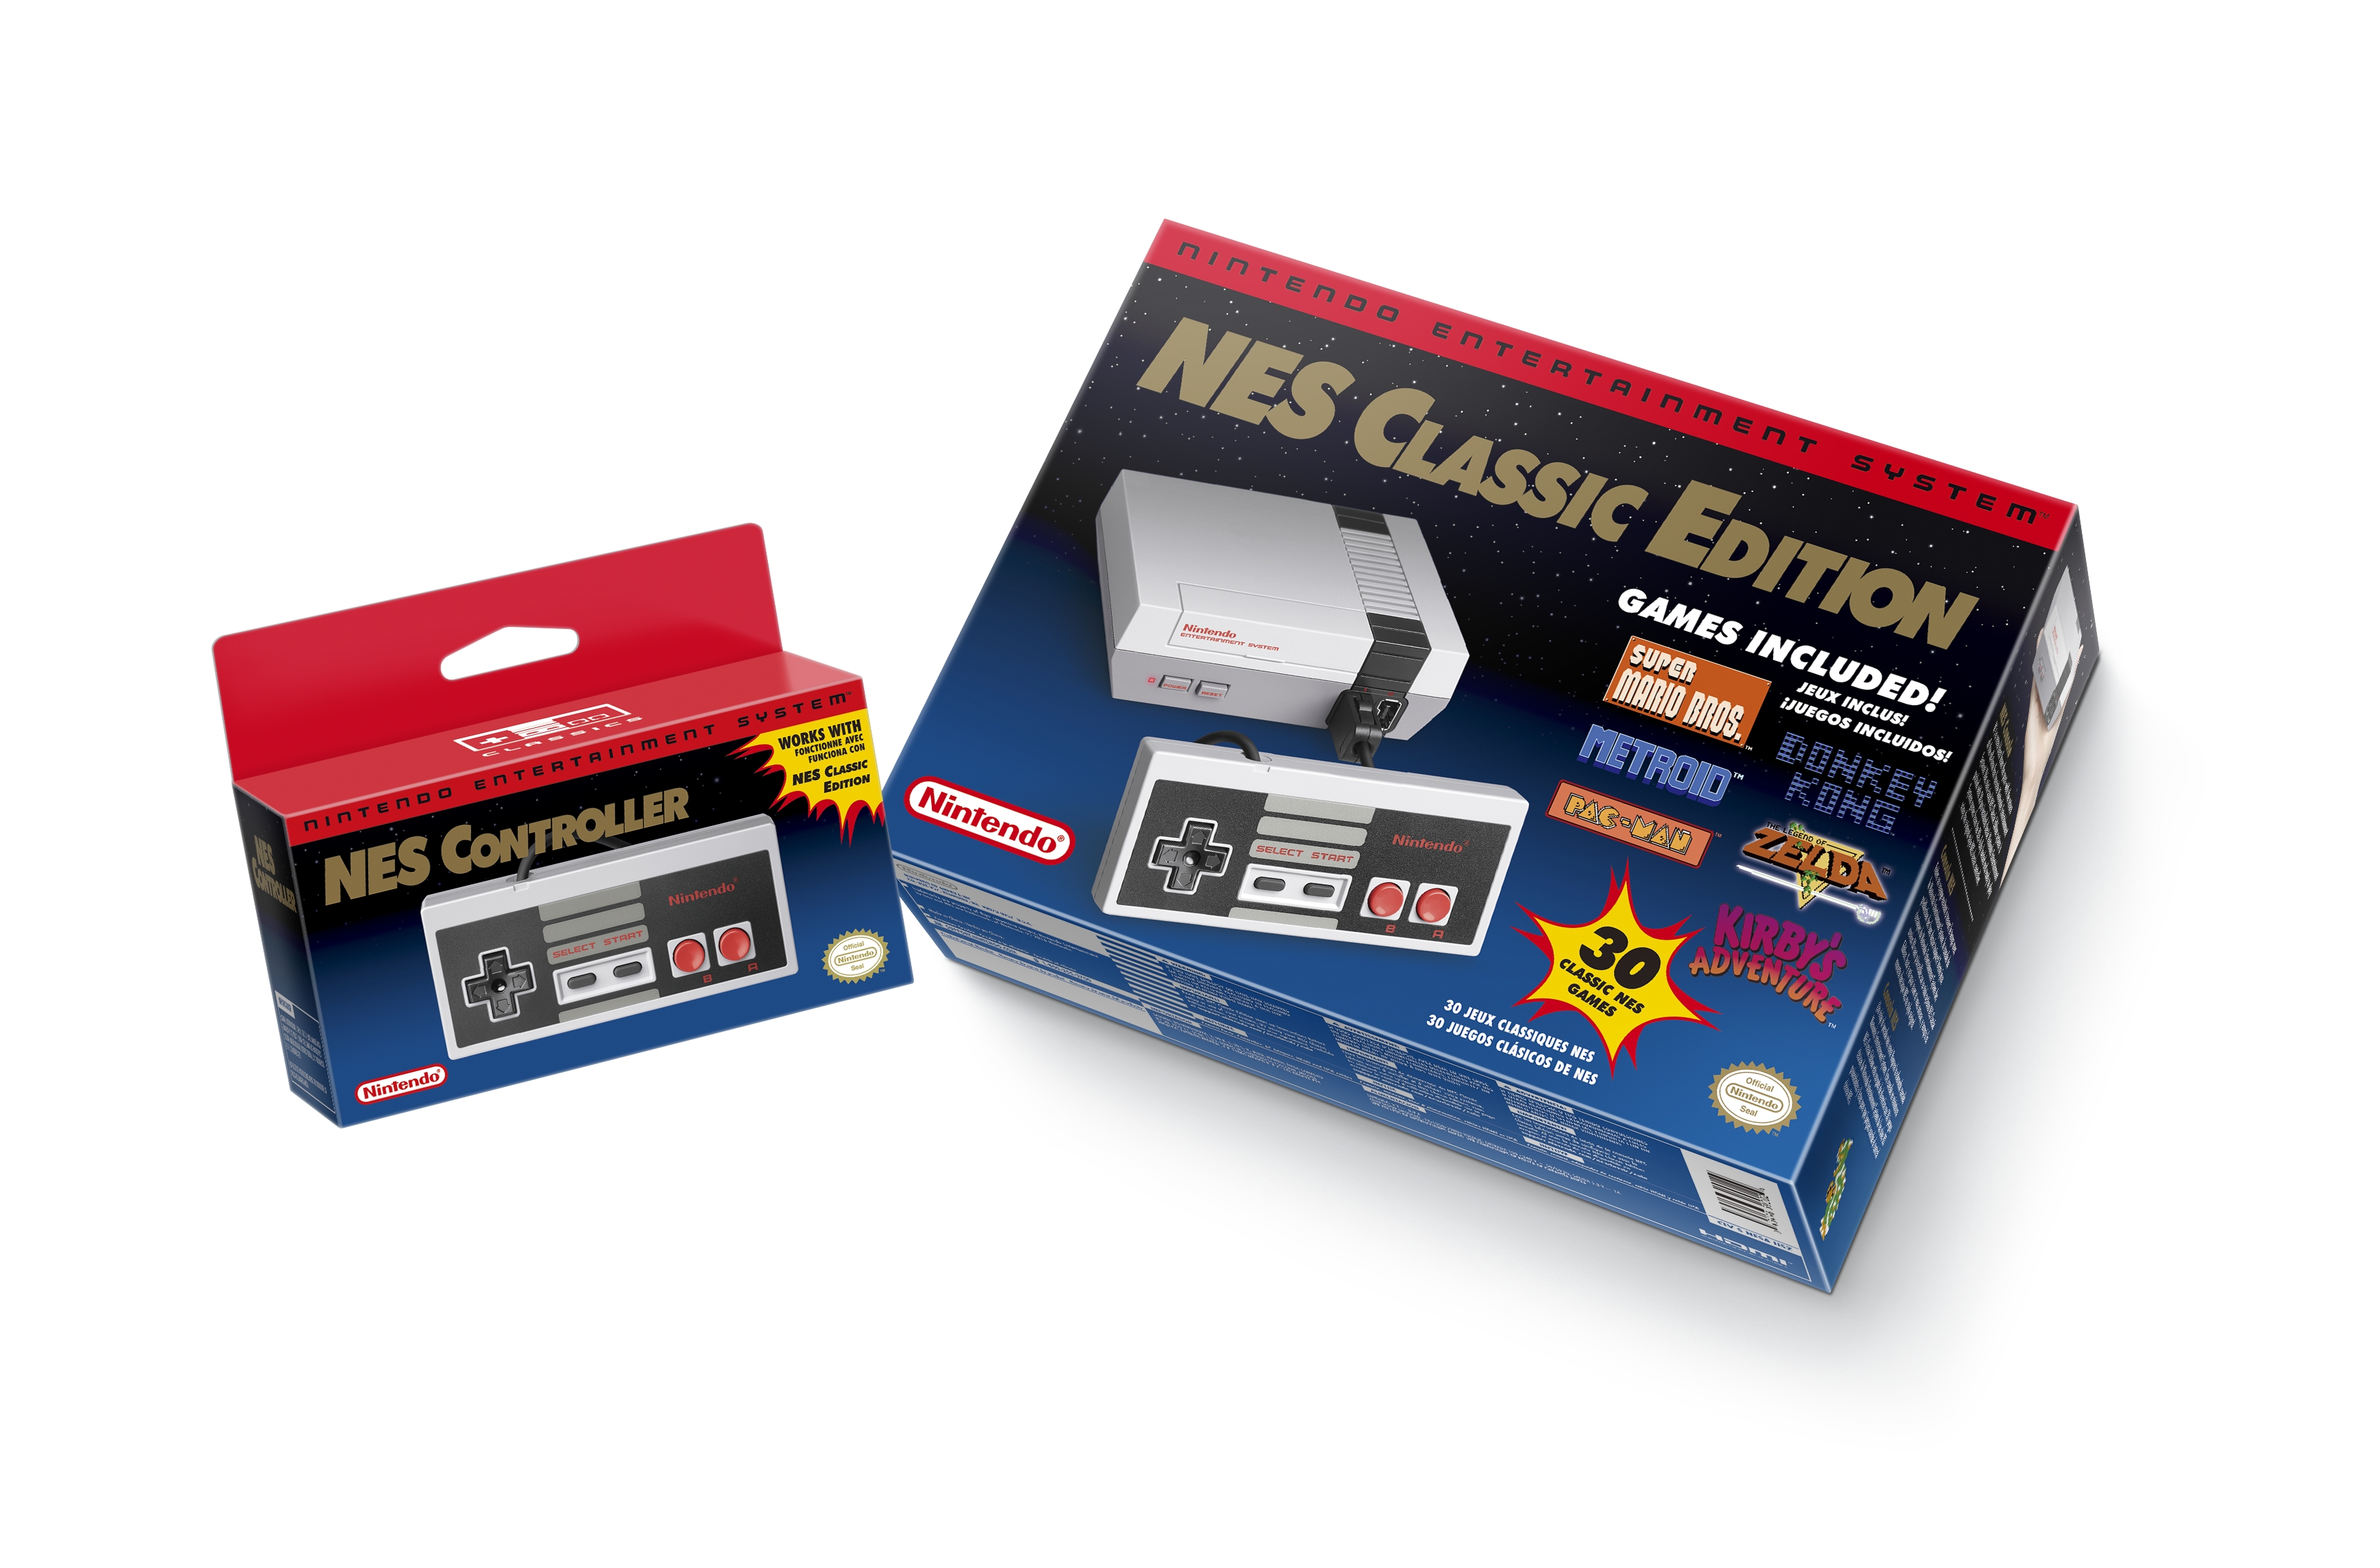 NES Classic 2